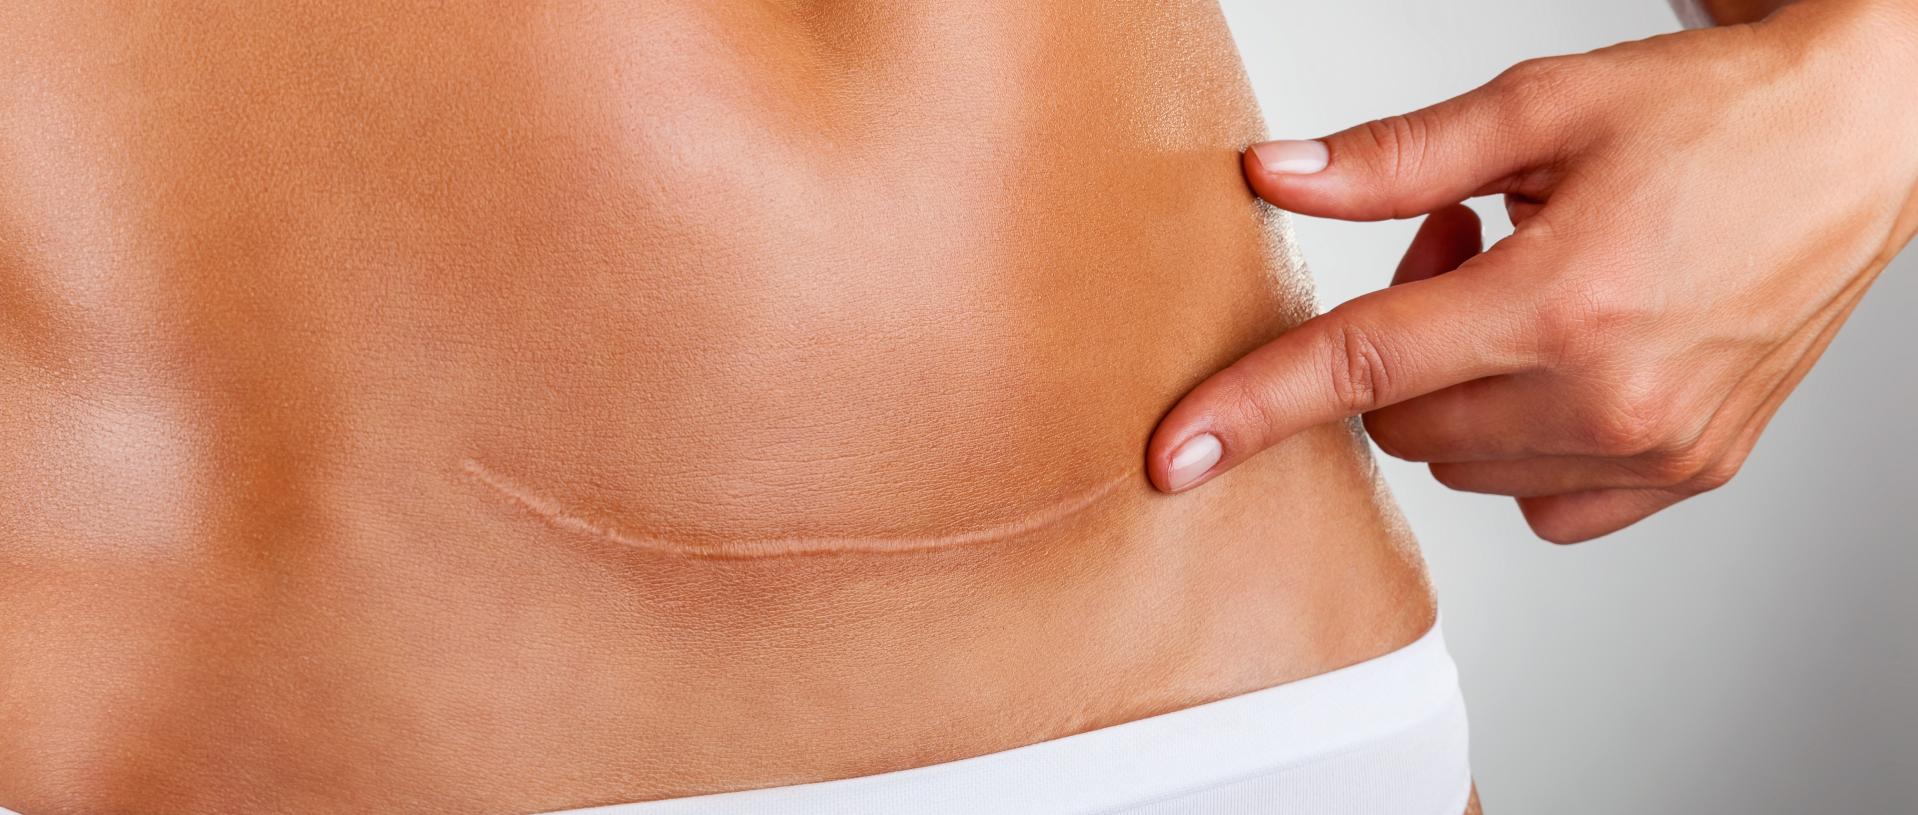 vientre de mujer con una cicatriz de una cesárea | eliminación y revisión de cicatrices